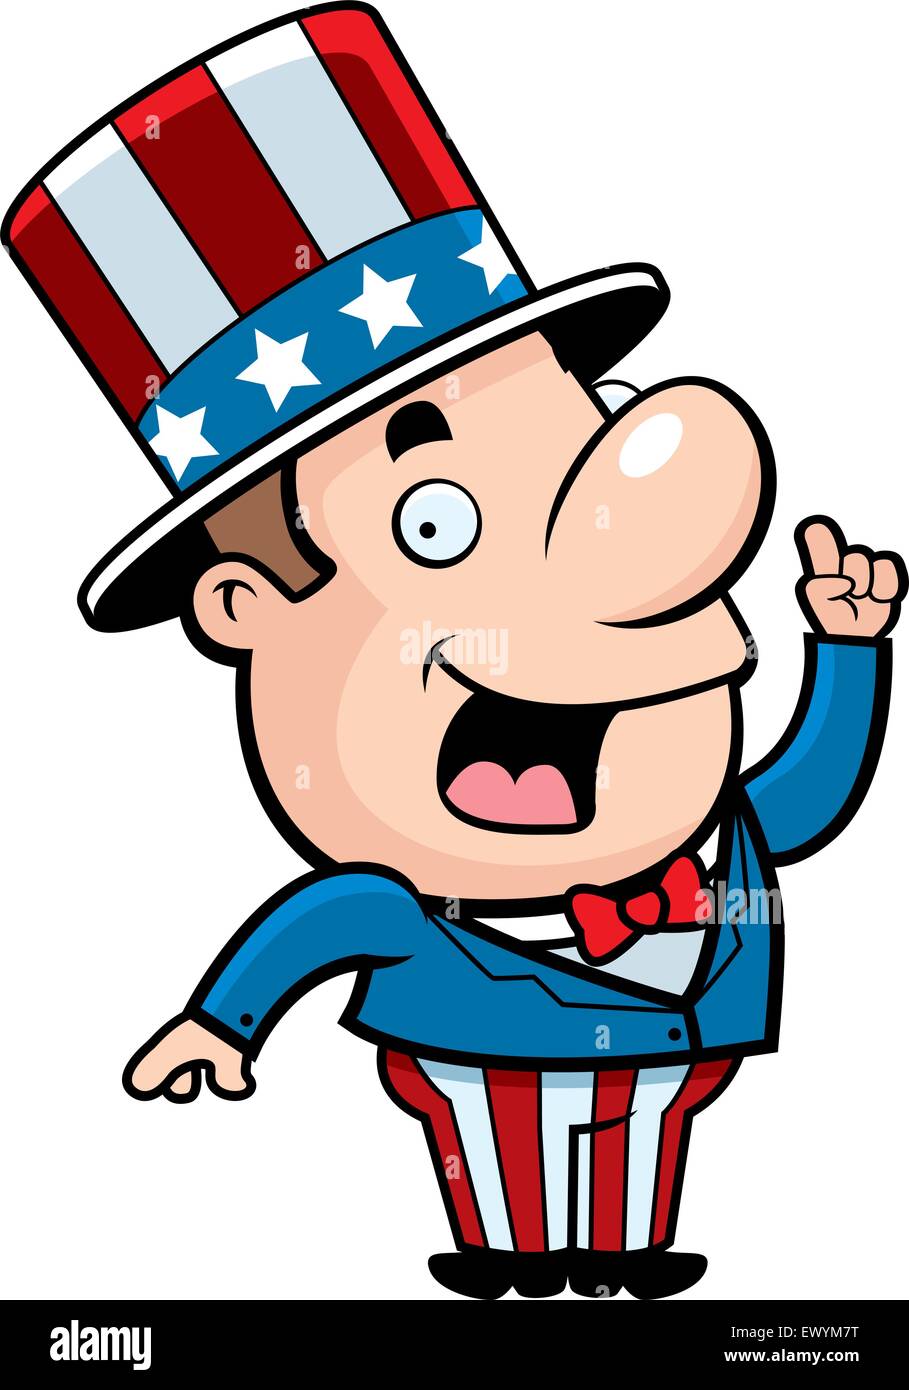 A happy cartoon patriotic man with an idea. Stock Vector